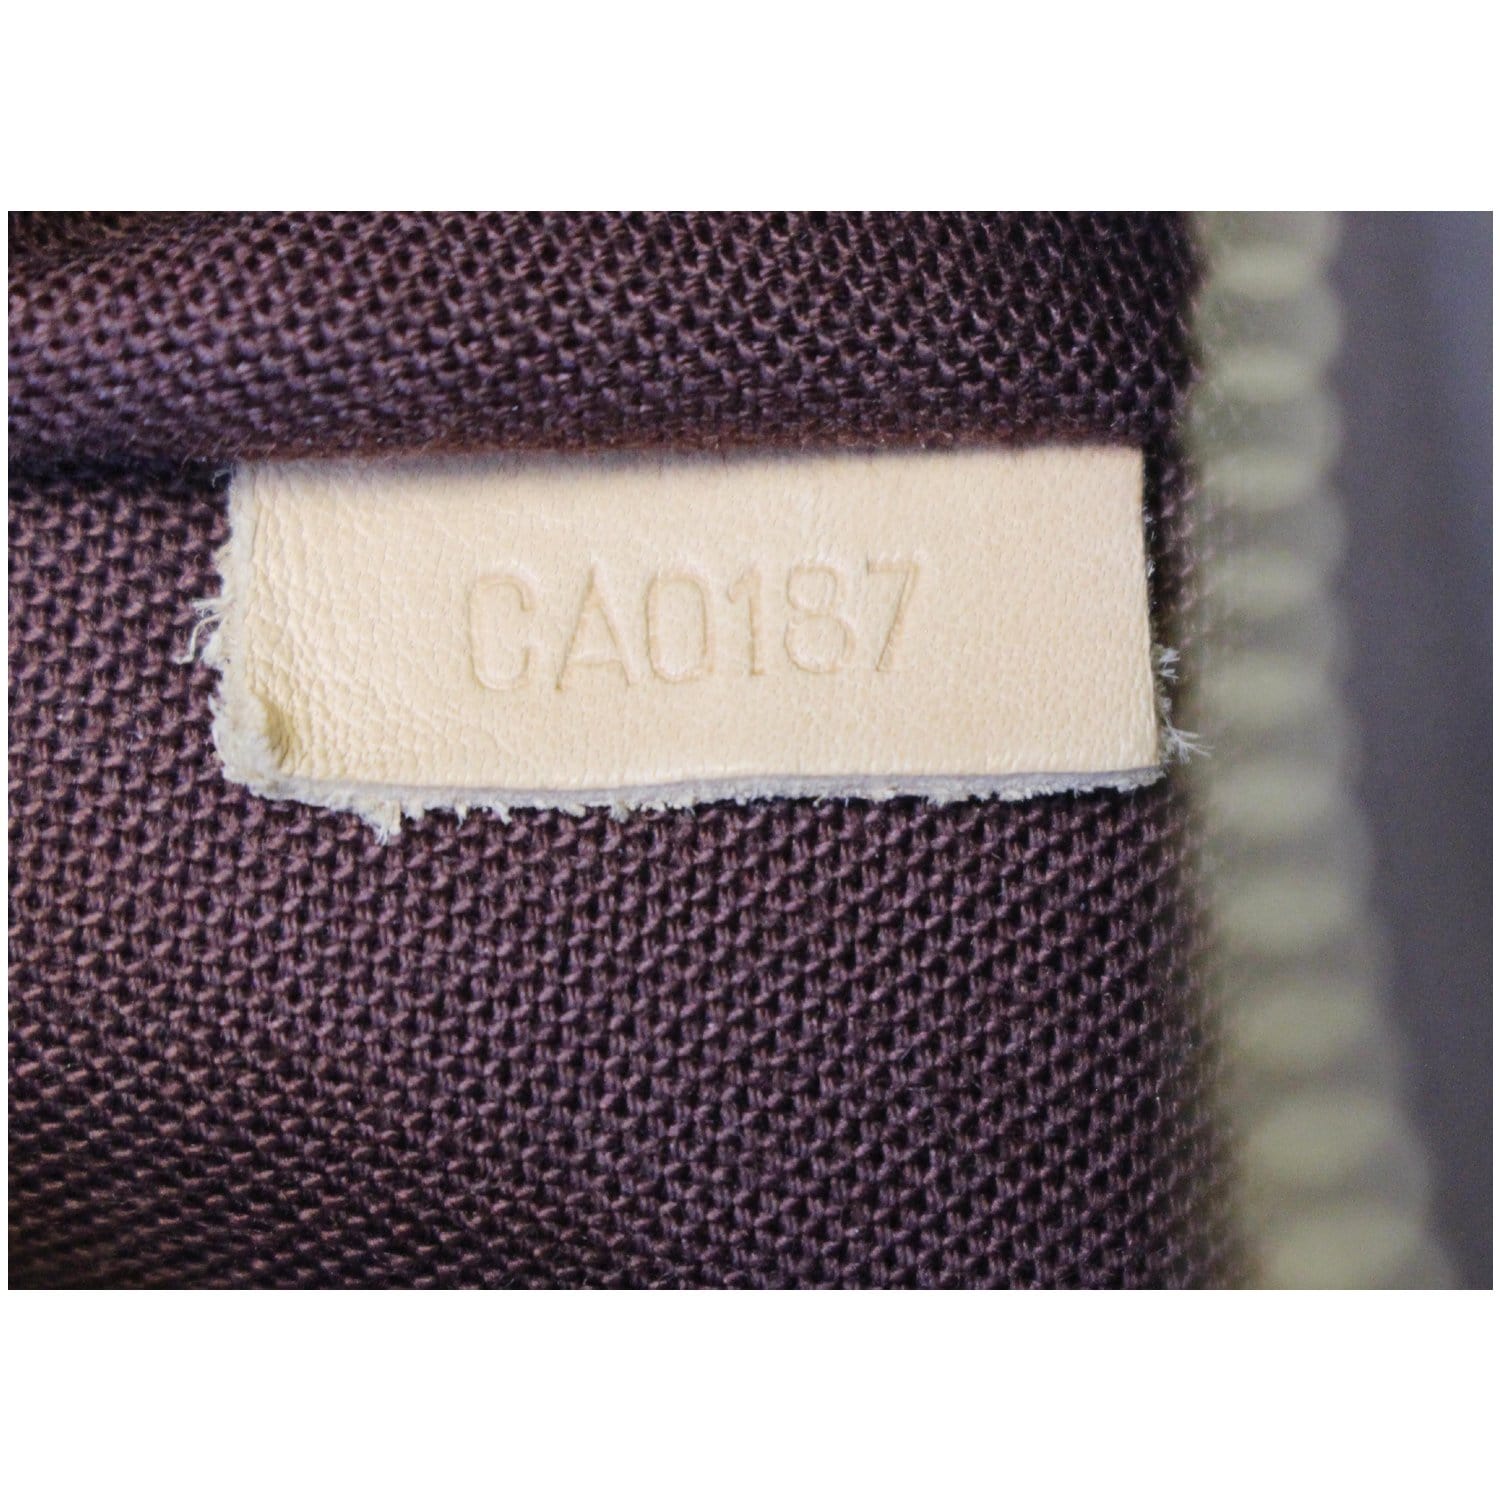 Louis Vuitton Mabillon Shoulder Bag Monogram Canvas Brown 48126117